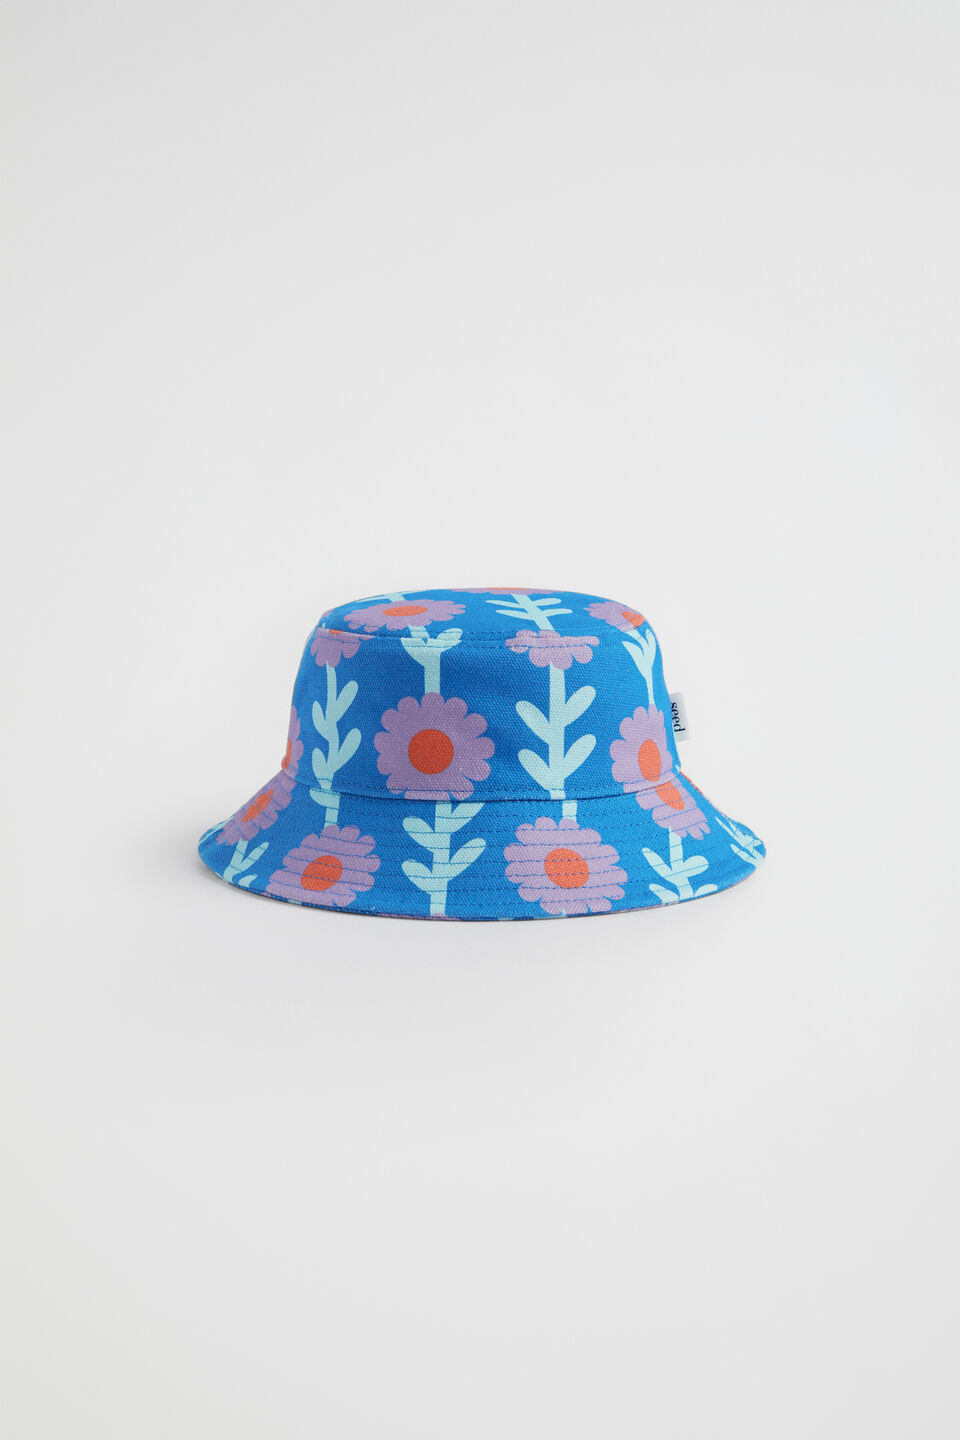 Retro Daisy Sun Hat  Multi